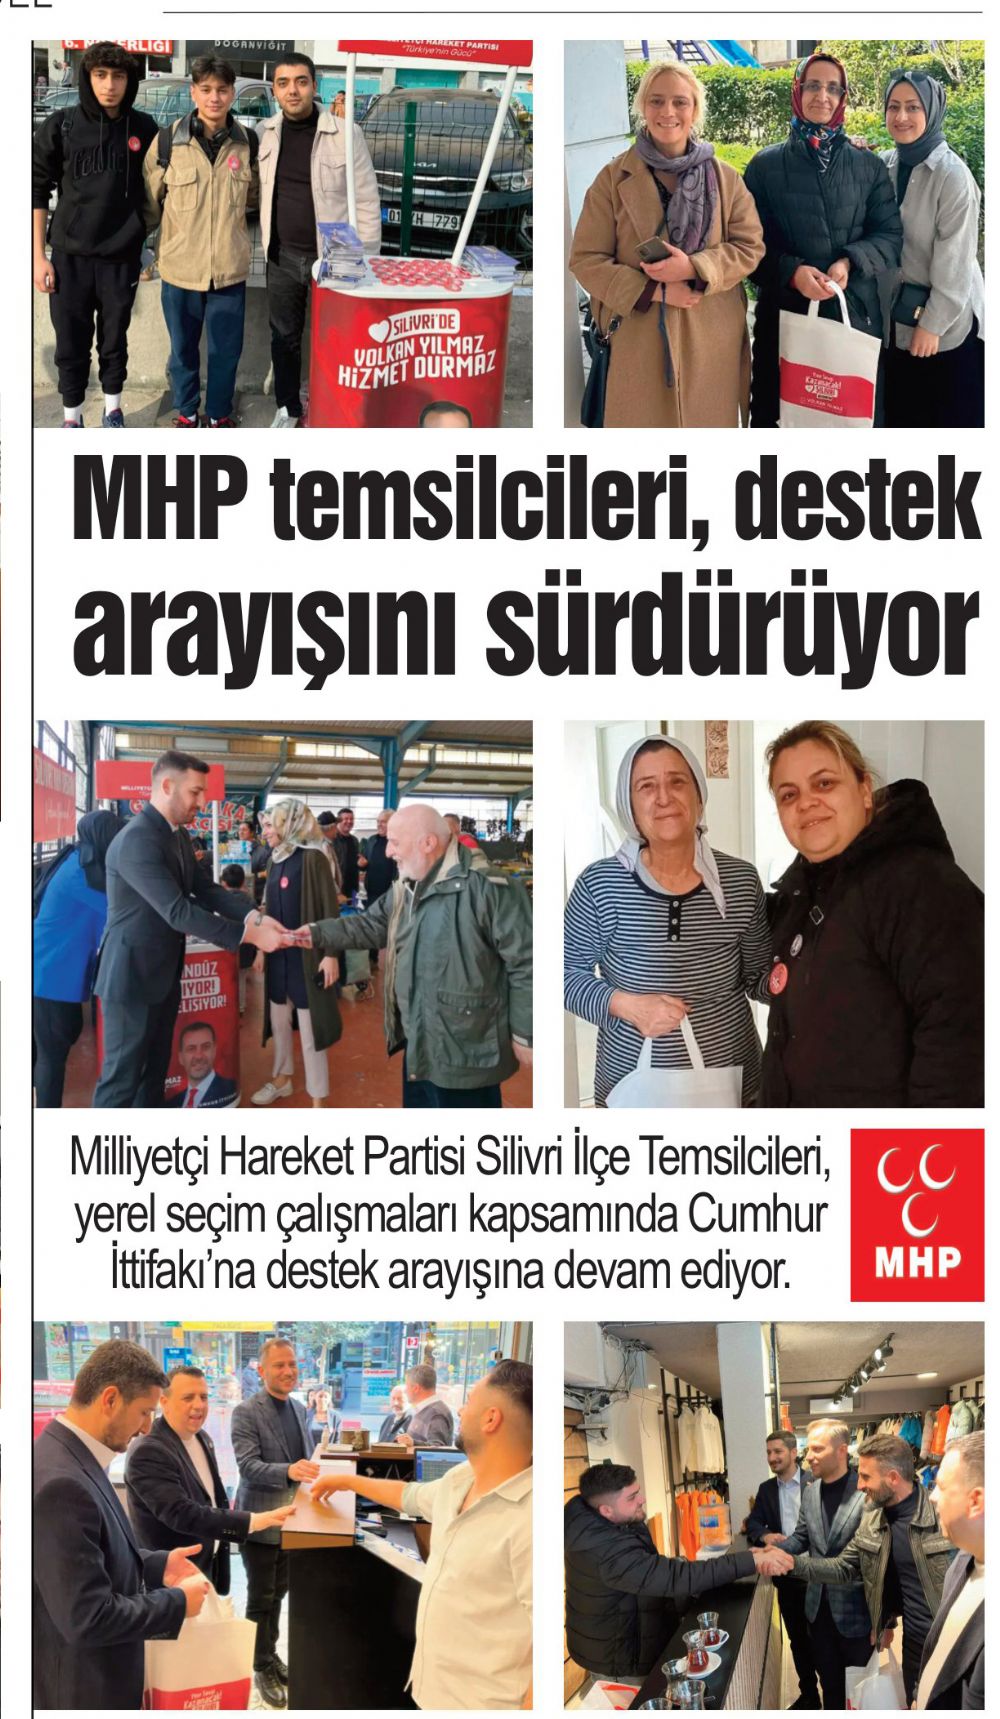 MHP temsilcileri, destek arayışını sürdürüyor